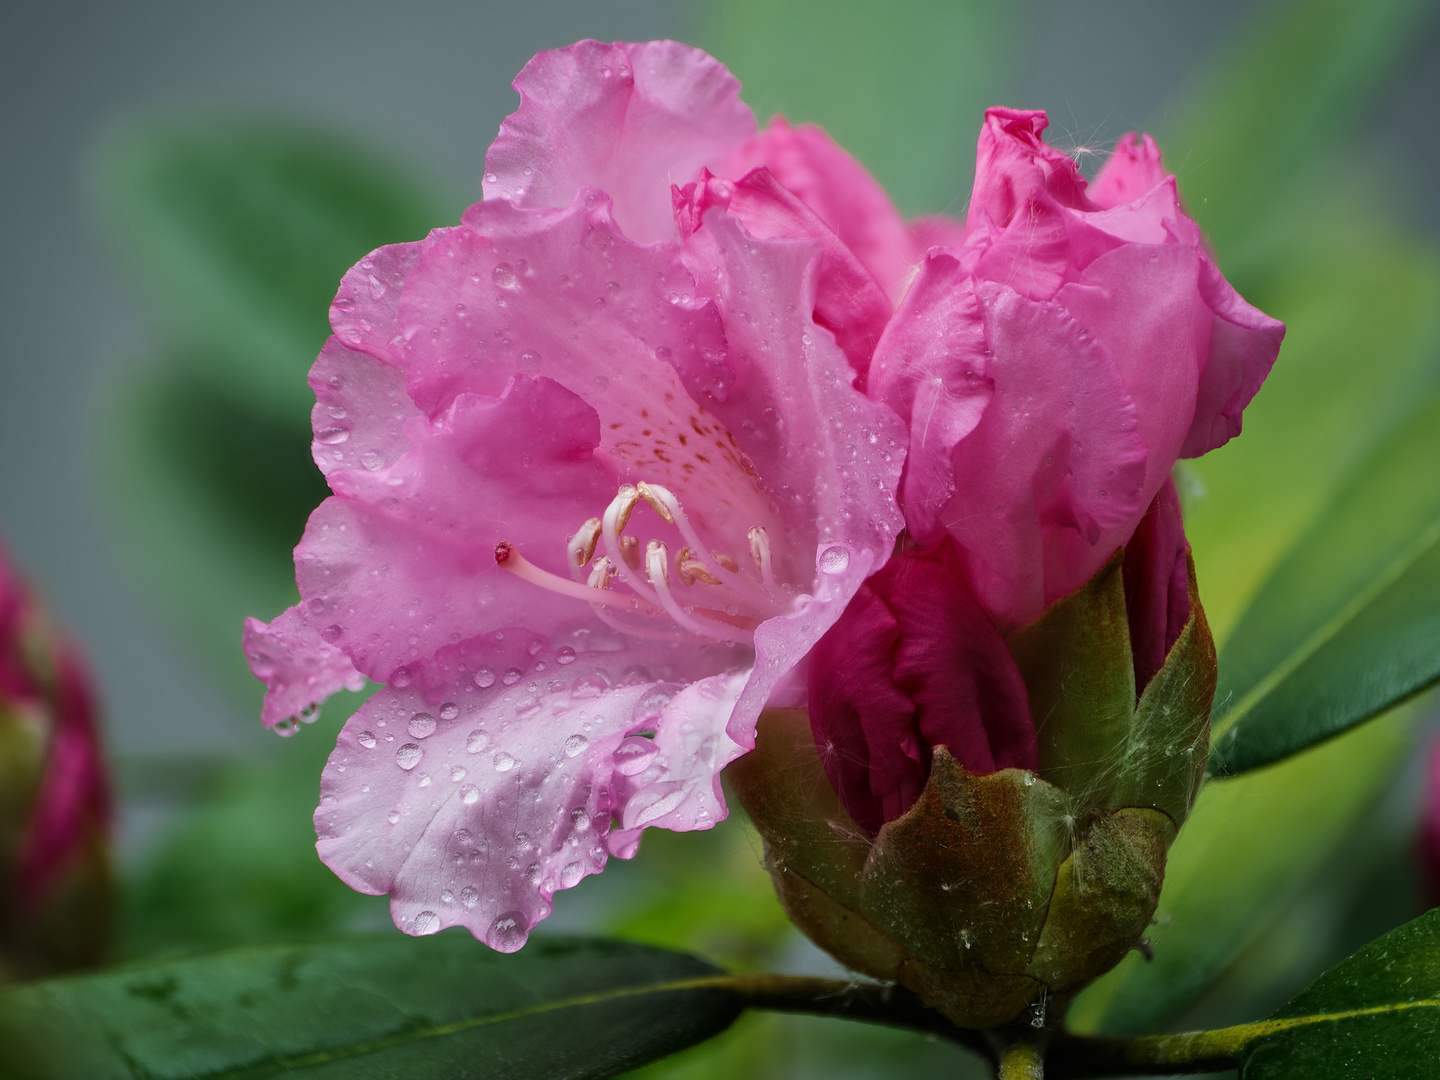 Rhododendron im Regen